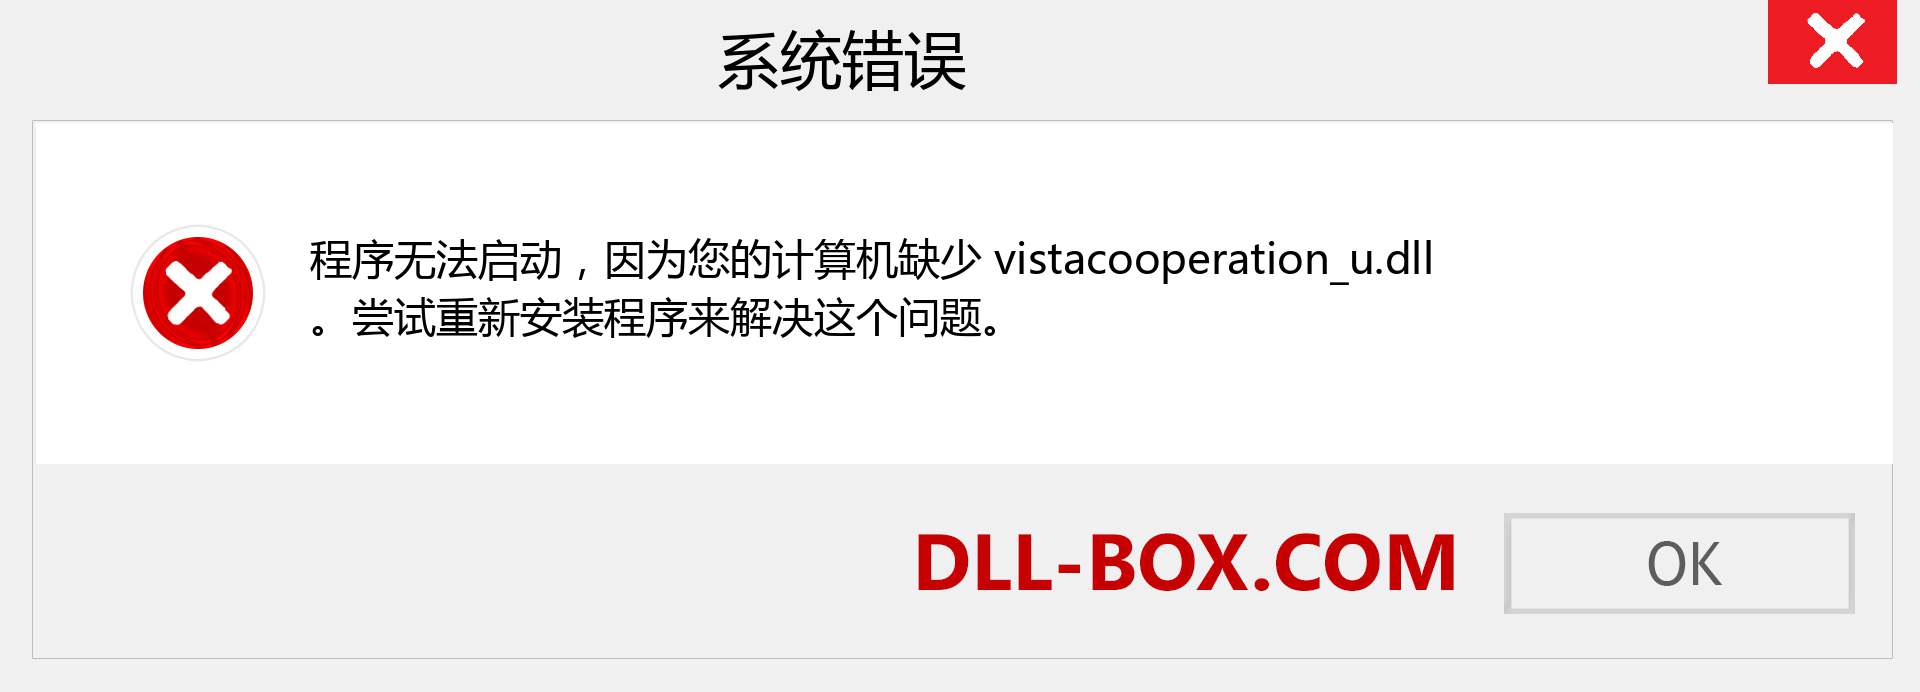 vistacooperation_u.dll 文件丢失？。 适用于 Windows 7、8、10 的下载 - 修复 Windows、照片、图像上的 vistacooperation_u dll 丢失错误